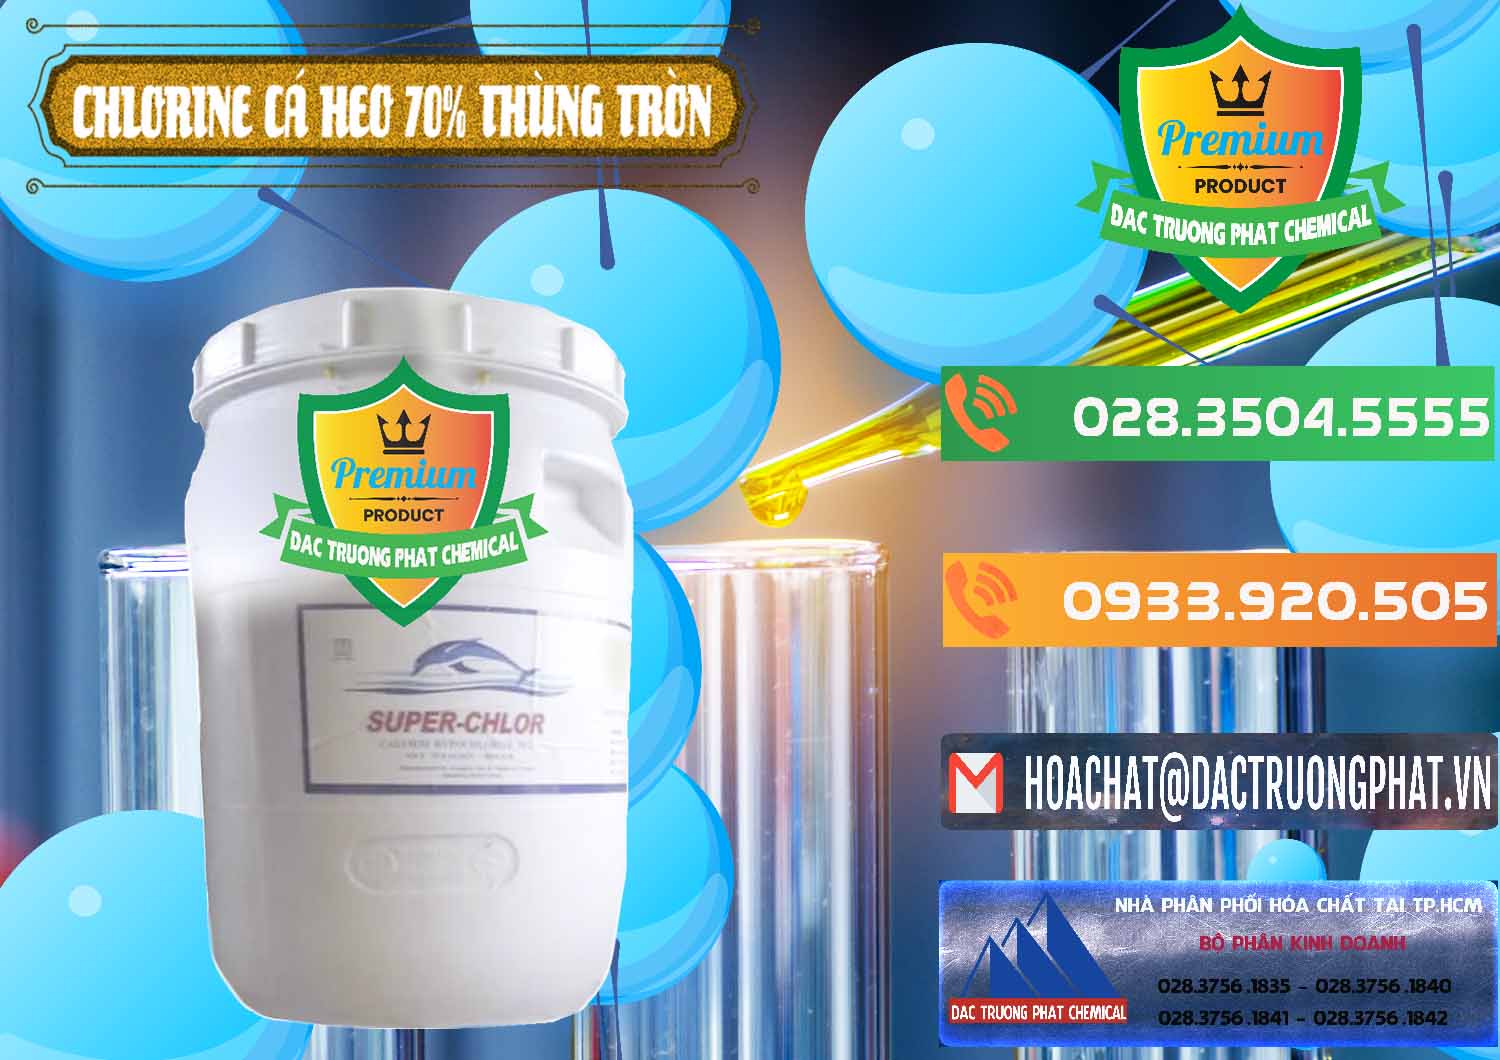 Công ty bán và cung cấp Clorin - Chlorine Cá Heo 70% Super Chlor Thùng Tròn Nắp Trắng Trung Quốc China - 0239 - Phân phối và cung cấp hóa chất tại TP.HCM - hoachatxulynuoc.com.vn